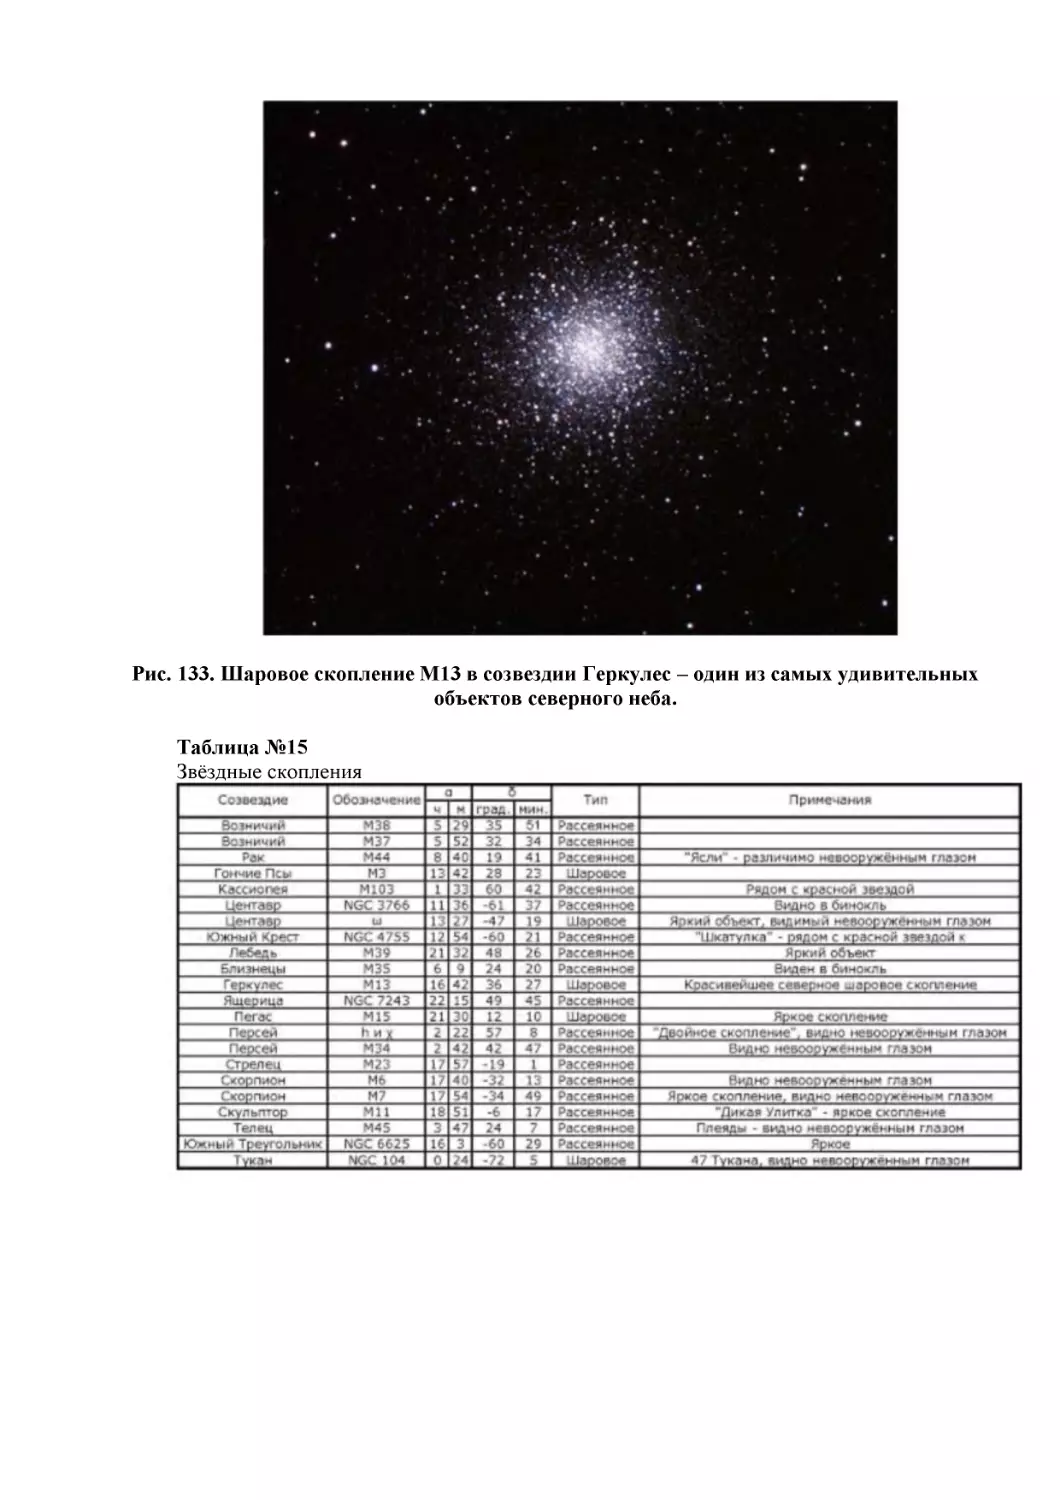 Рис. 133. Шаровое скопление М13 в созвездии Геркулес – один из самых удивительных объектов северного неба.